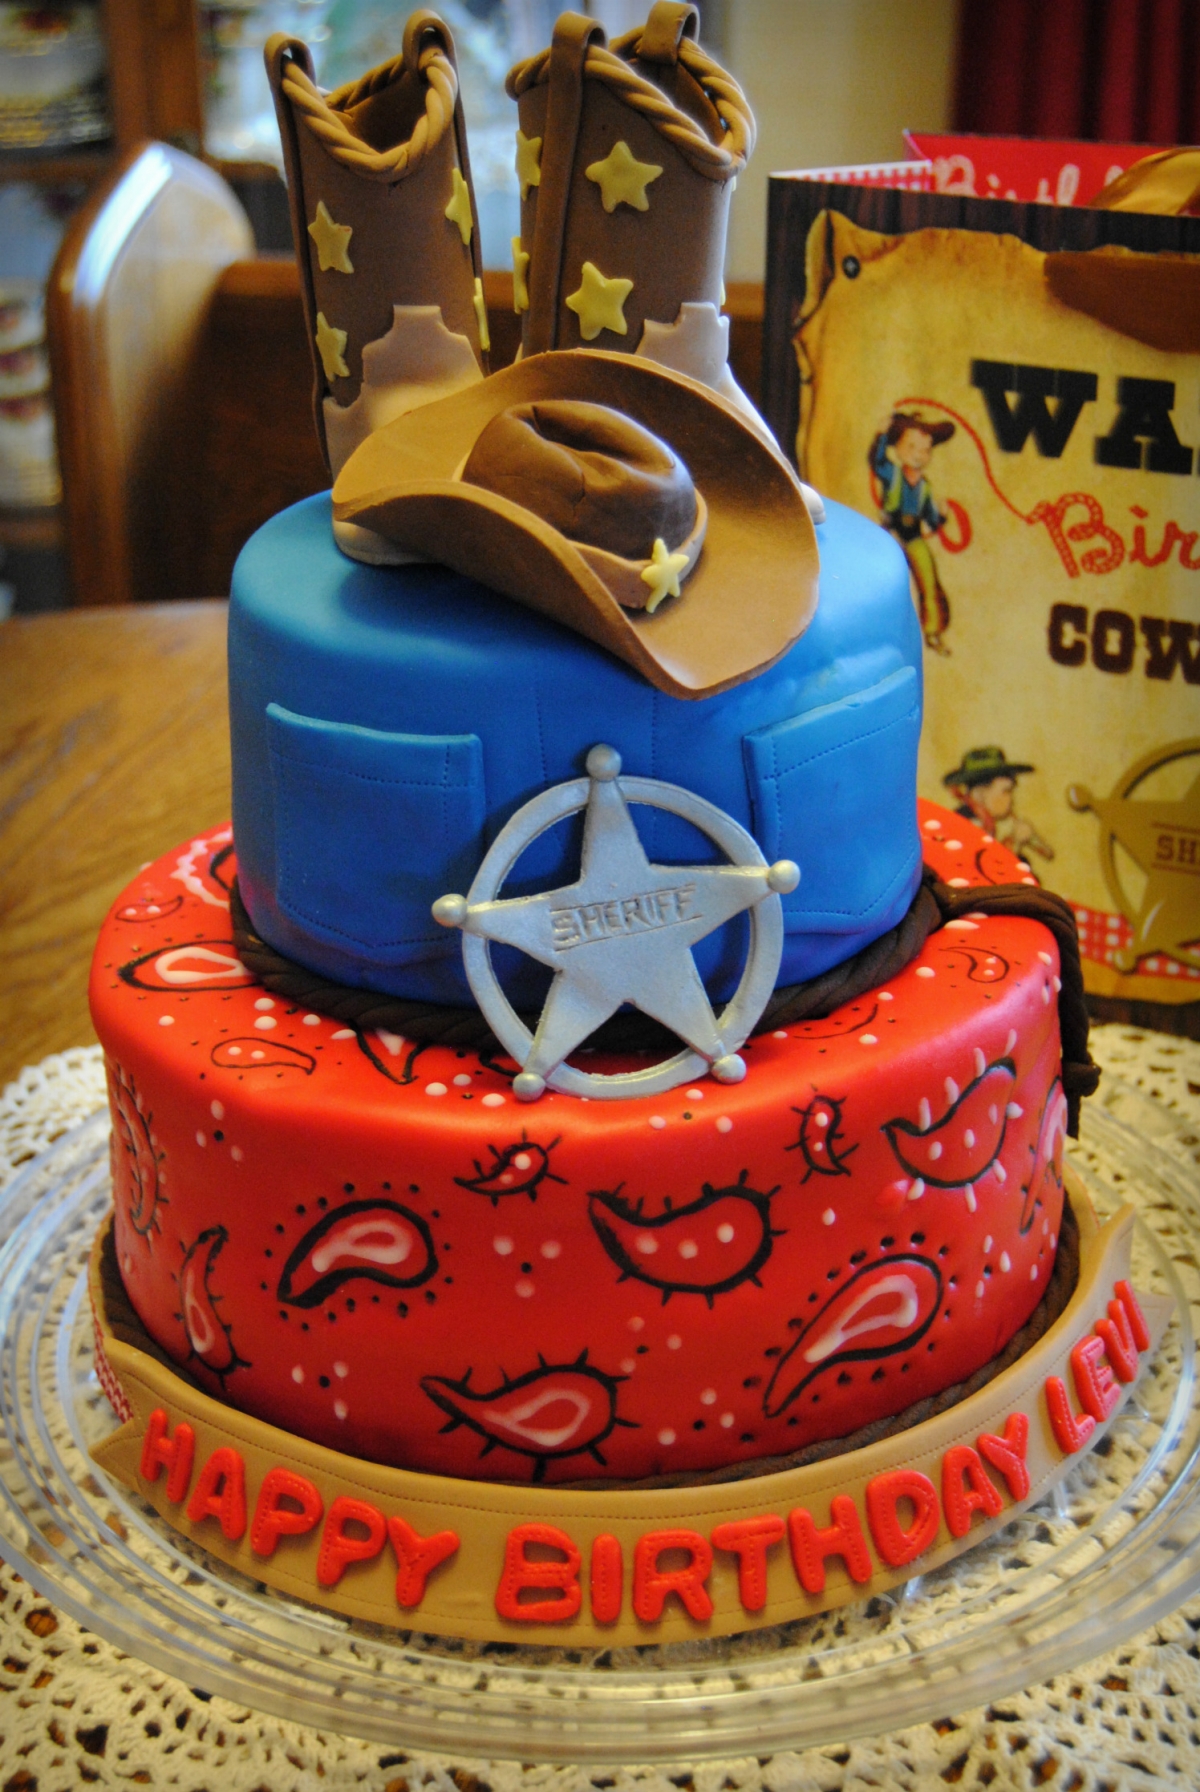 Cowboy-Birthday-Cake-Ideas.jpg